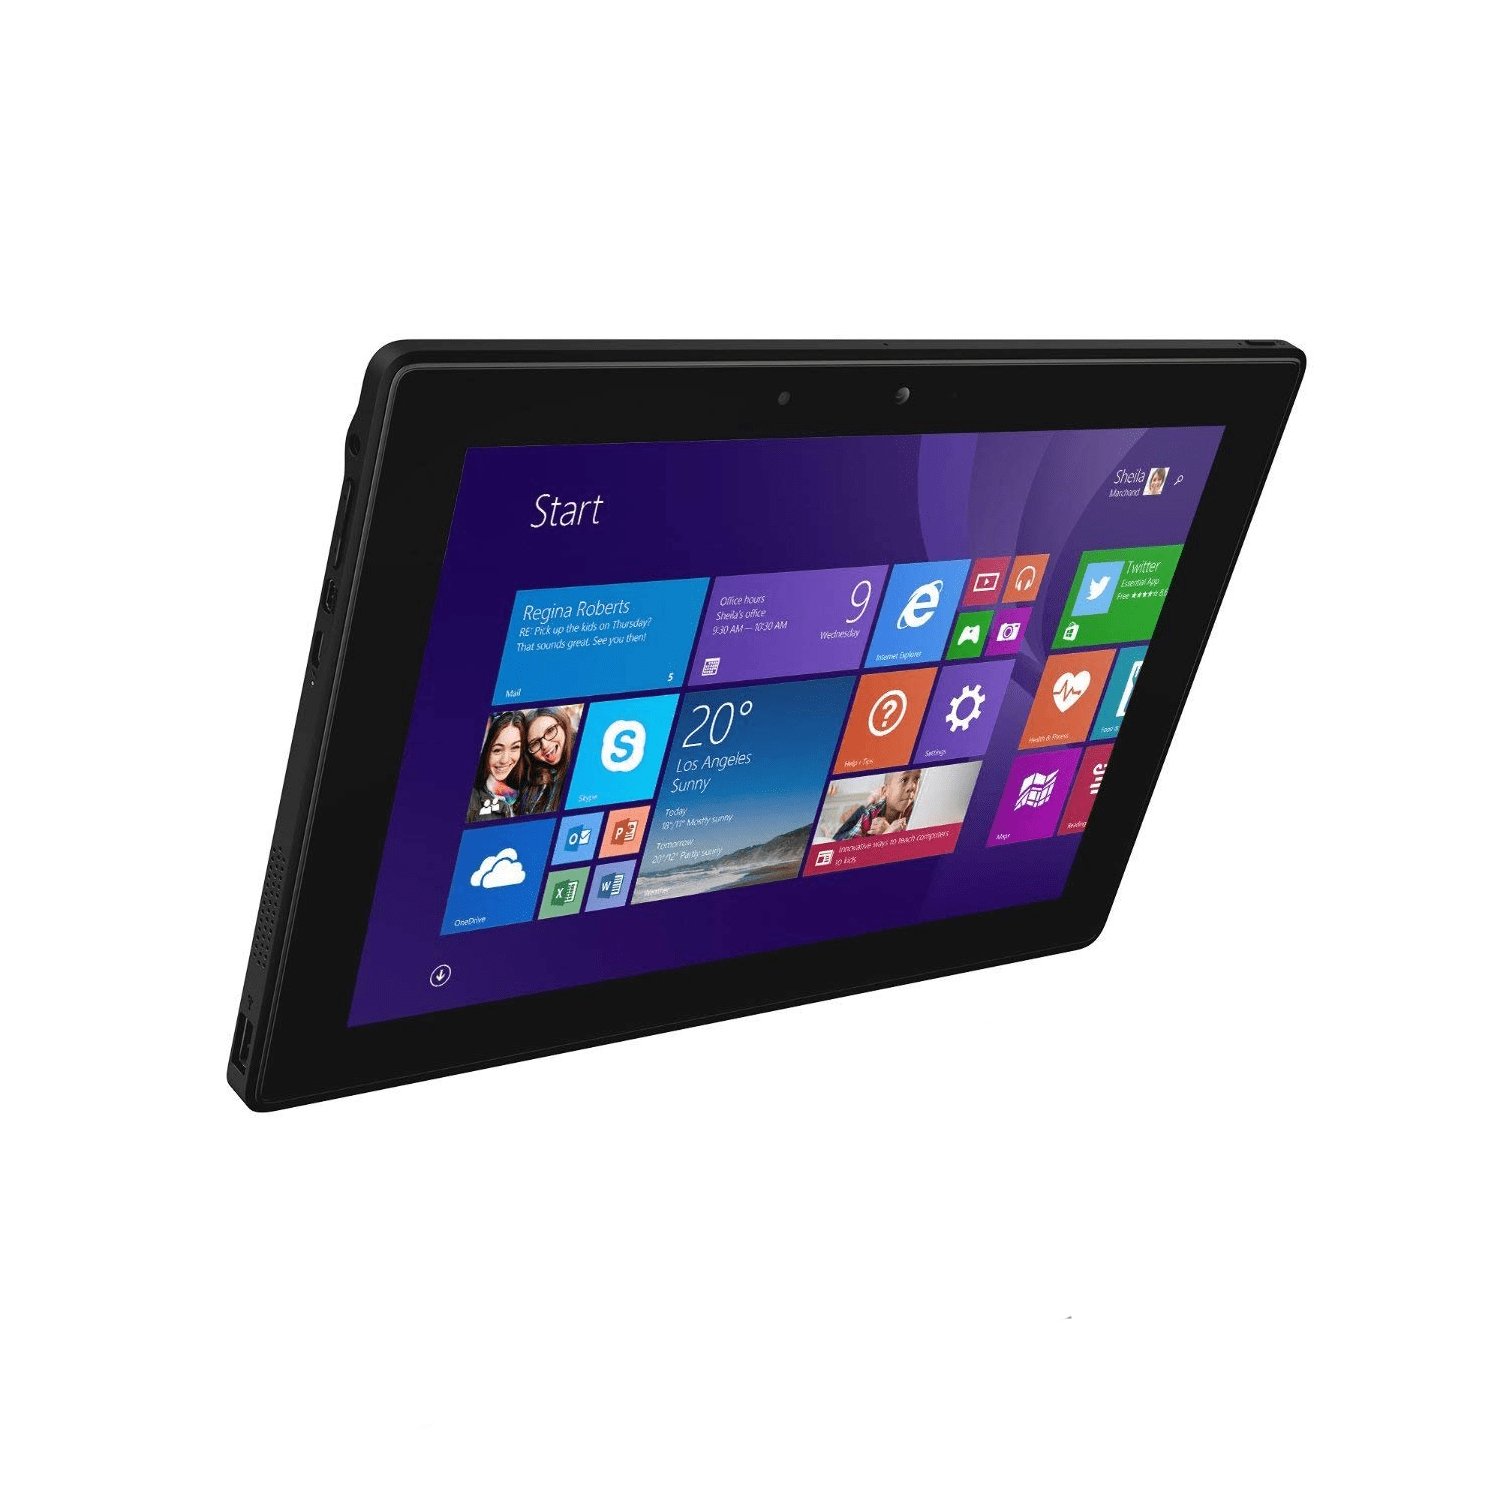 PC Tablette Dell Venue 10 Pro 4G LTE Wifi Windows 10.1